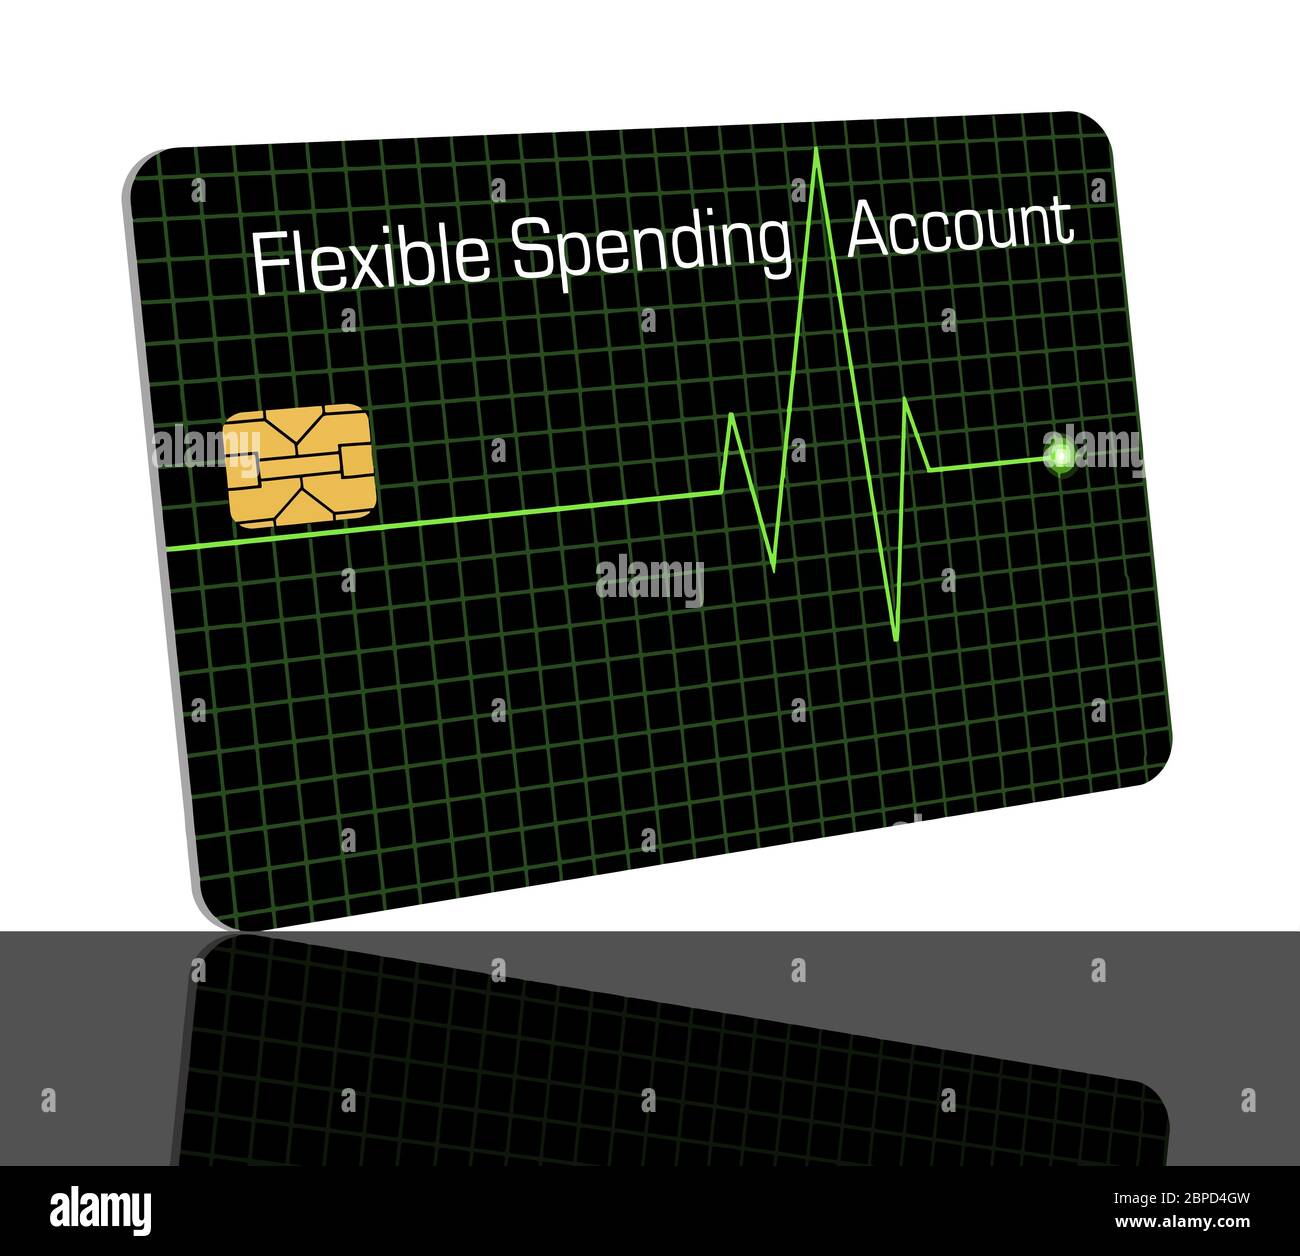 Voici une carte de débit flexible de compte de dépenses conçue avec une ligne graphique EKG pour indiquer que la carte est pour les frais médicaux. Copier la zone de texte. FSA c Illustration de Vecteur